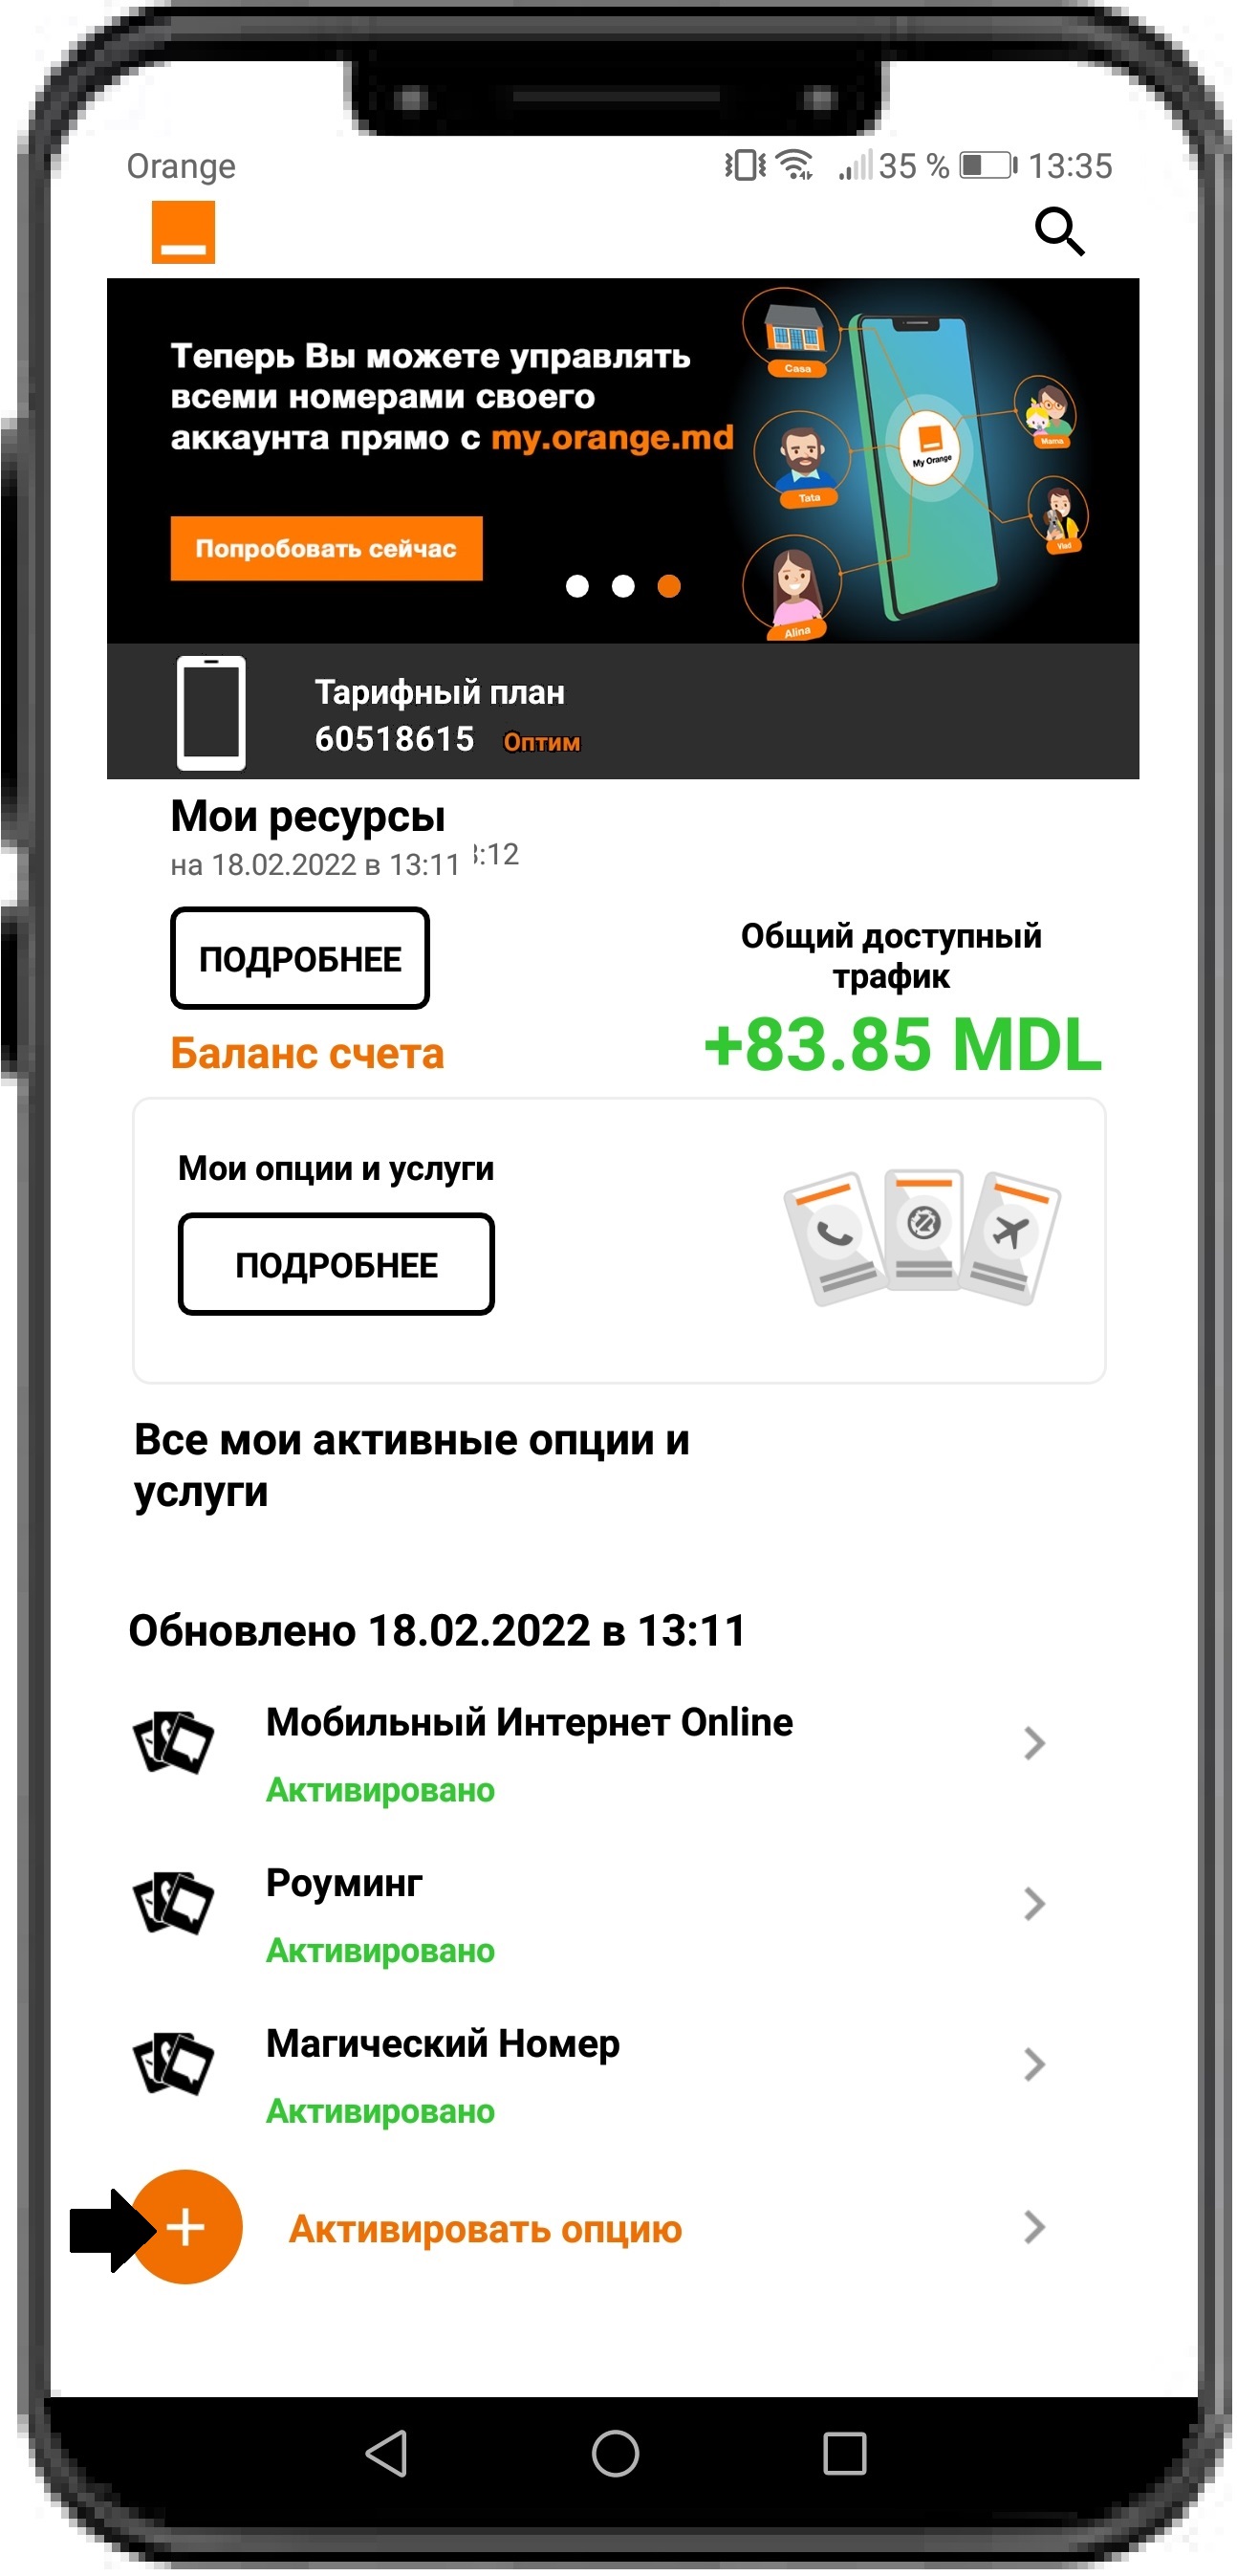 Приложение My Orange Moldova  активация  опций и услуг на номере PrePay